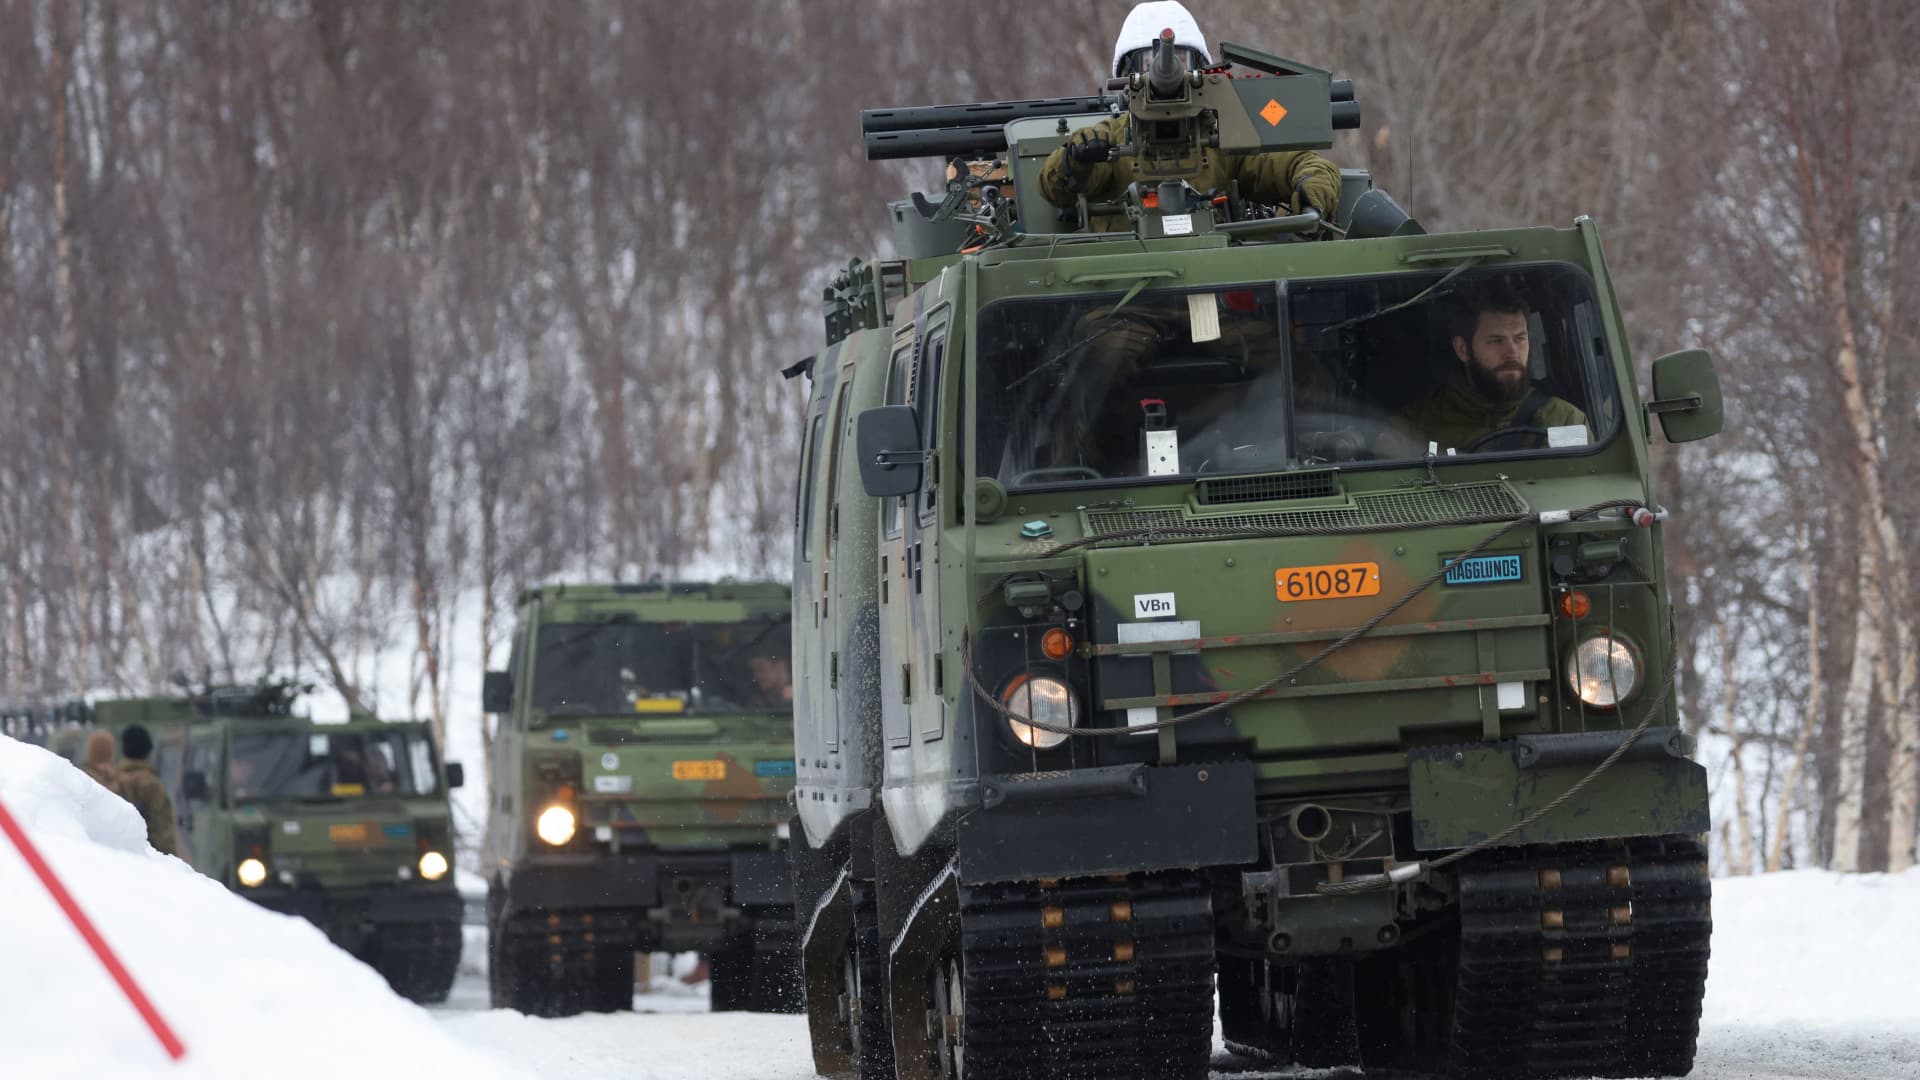 Finnland hat nur noch wenige Tage Zeit, um die NATO-Mitgliedschaft zu beantragen